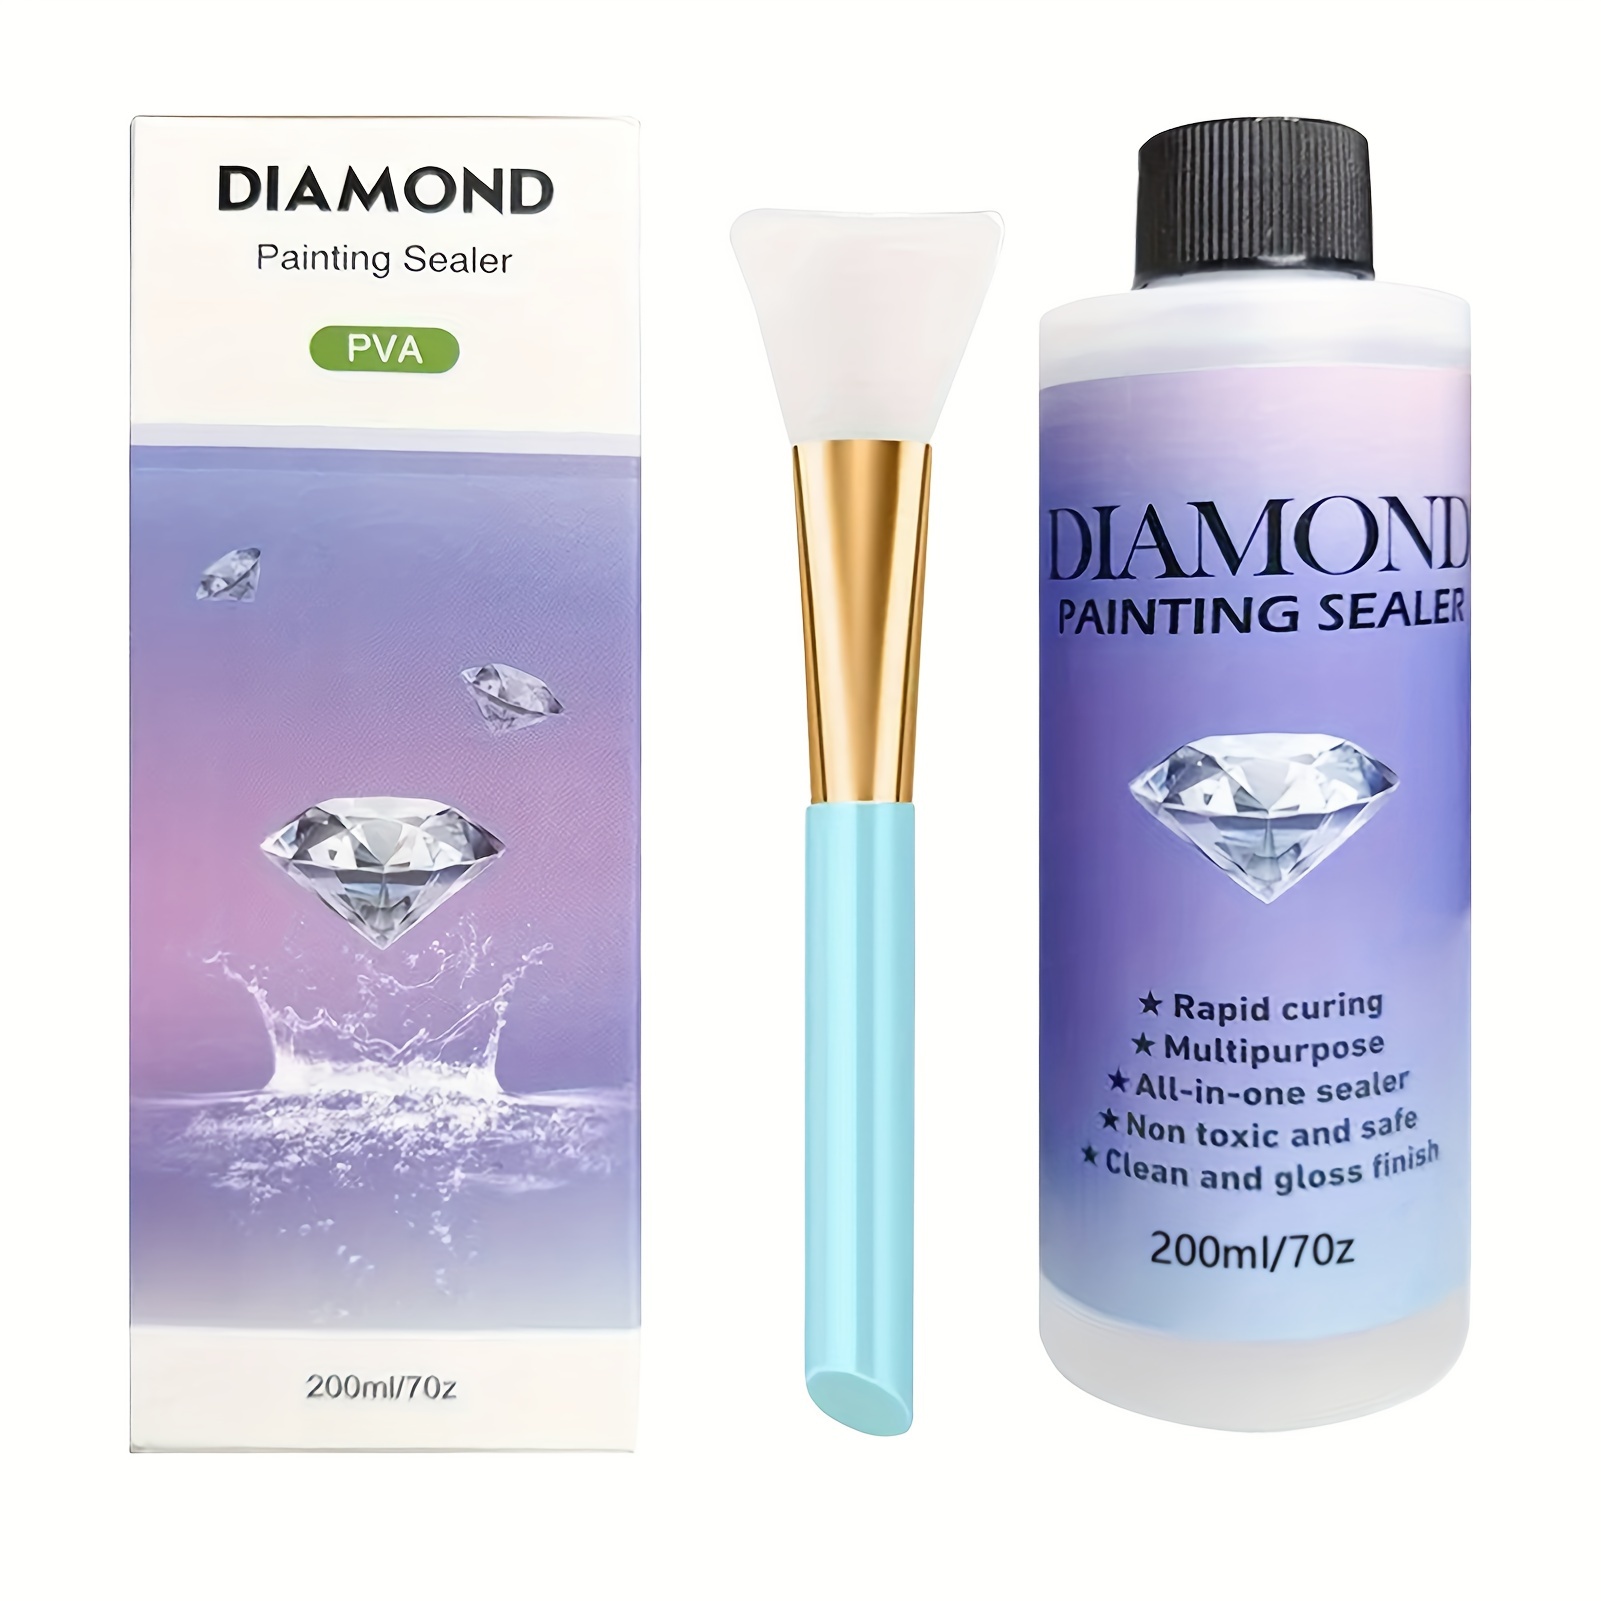 Diamond painting - Accesorios para la pintura de diamante